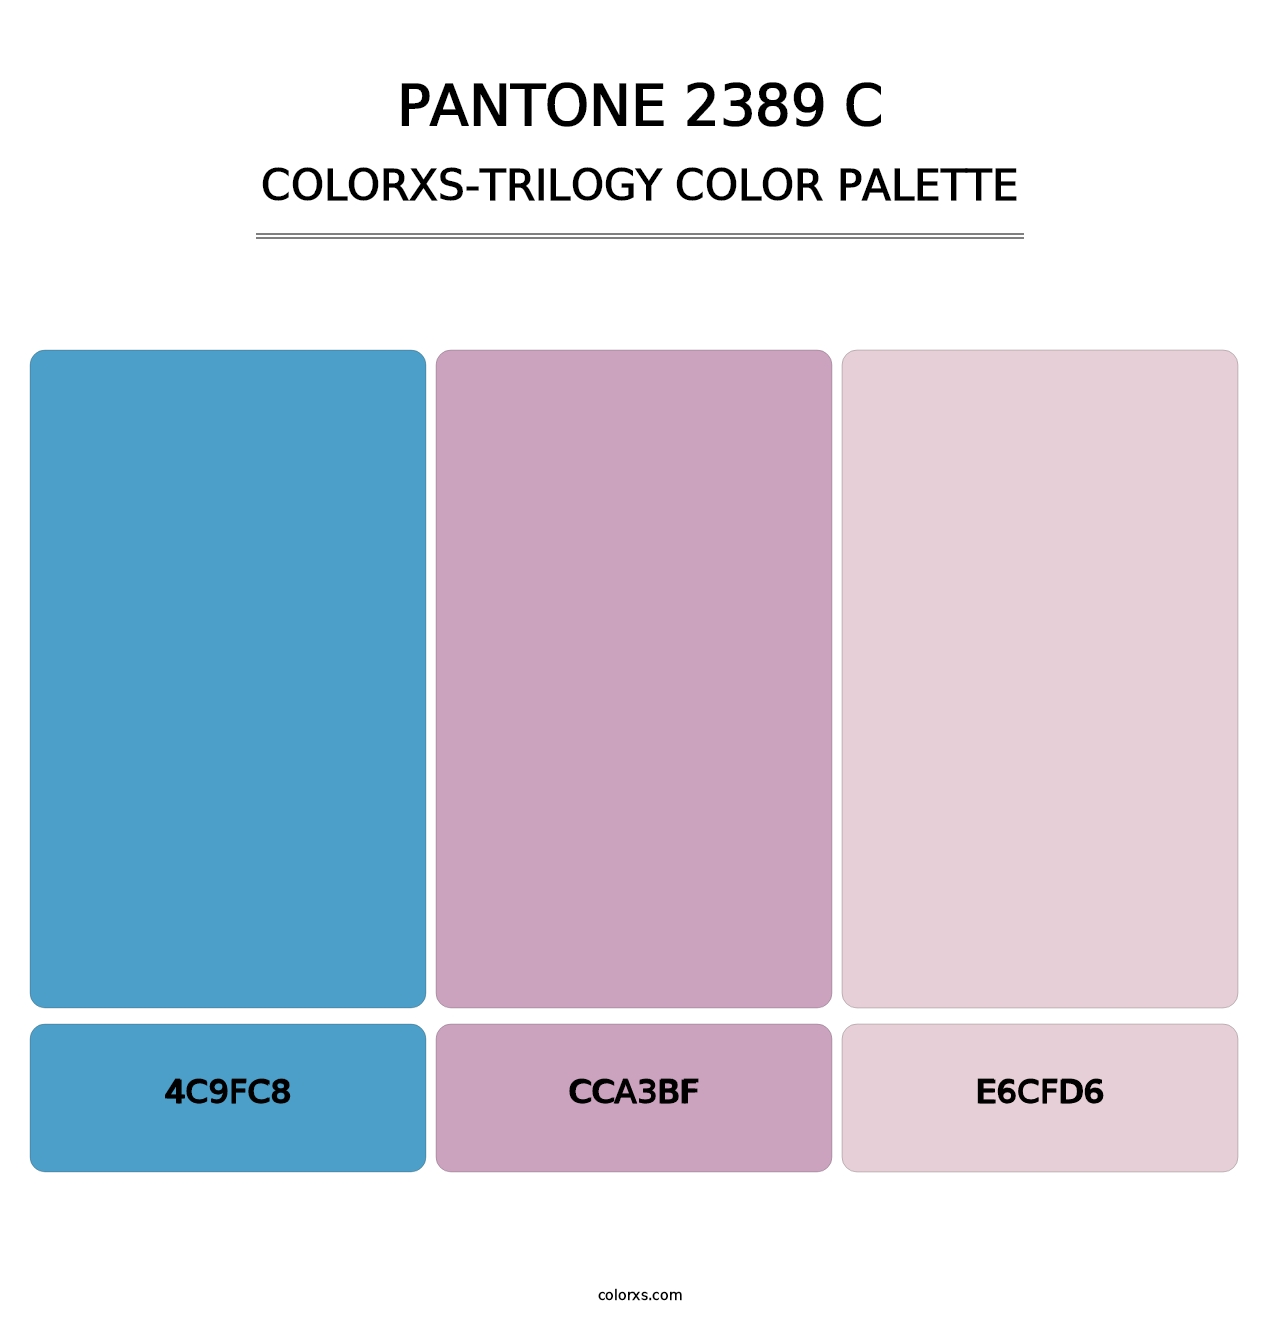 PANTONE 2389 C - Colorxs Trilogy Palette